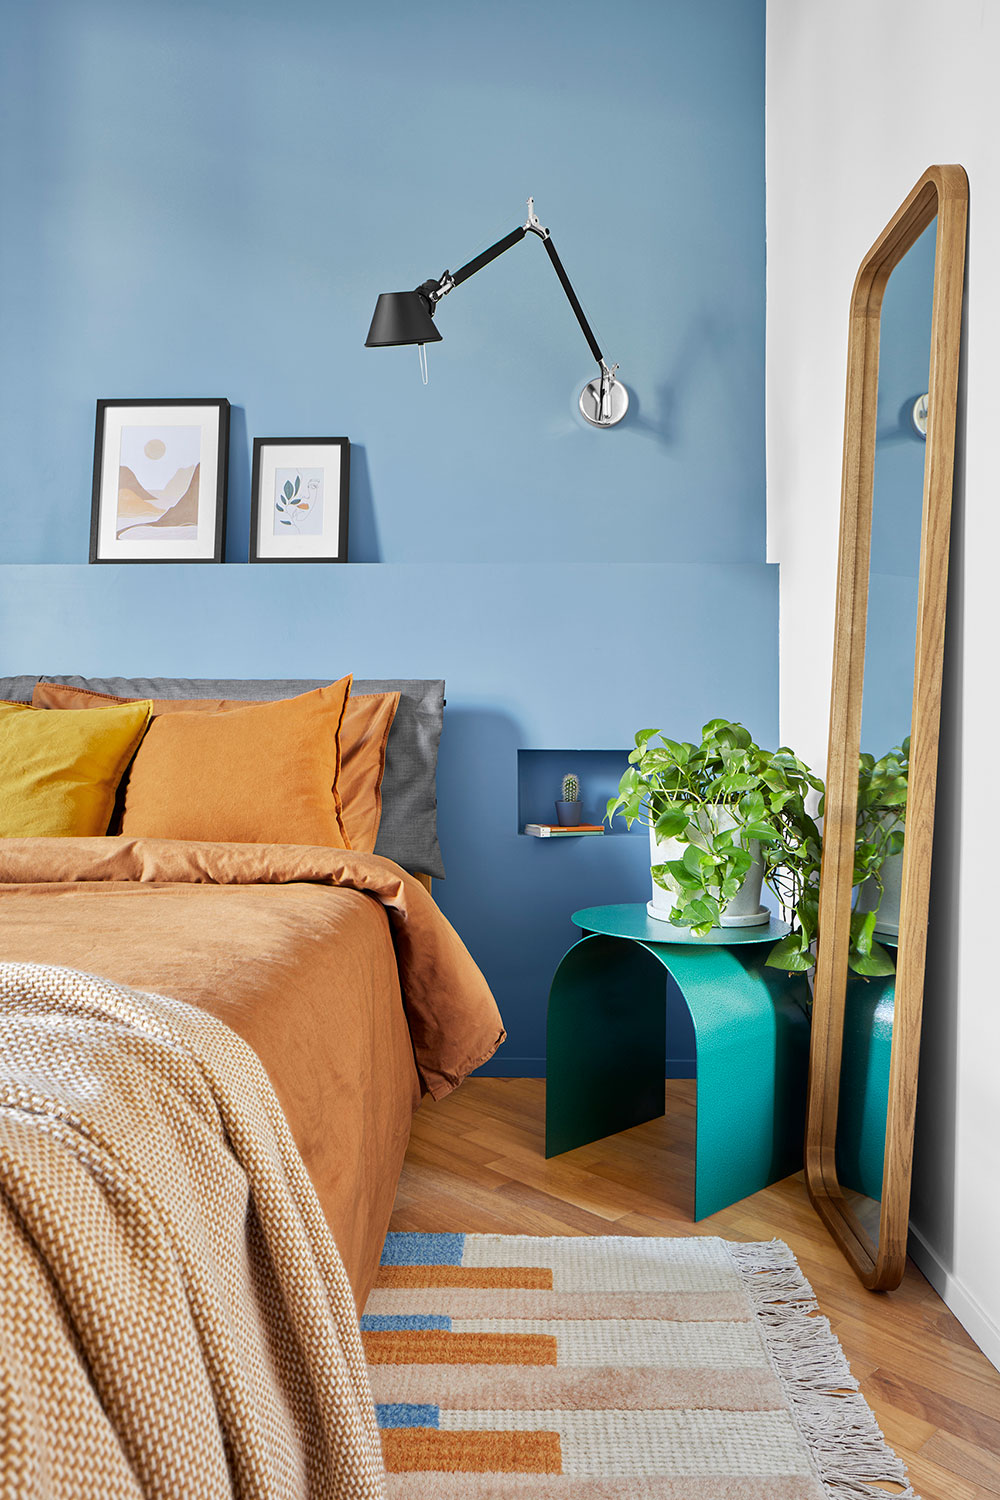 Chiêm ngưỡng căn hộ nhỏ có thiết kế táo bạo ngập tràn màu sắc - Ảnh 6.